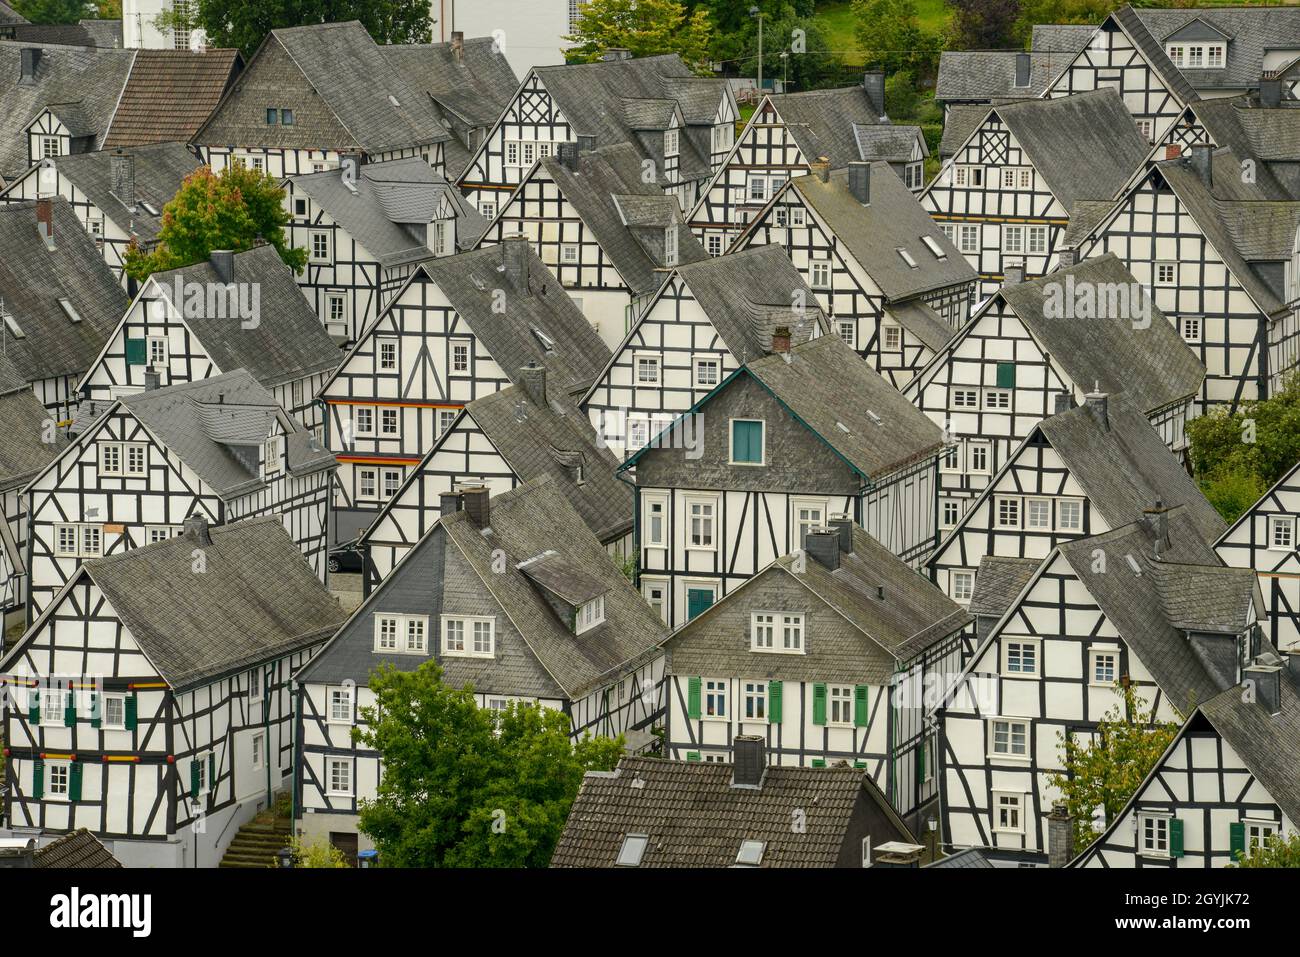 Vue de drone au village transditionnel de Freudenburg, en Allemagne Banque D'Images